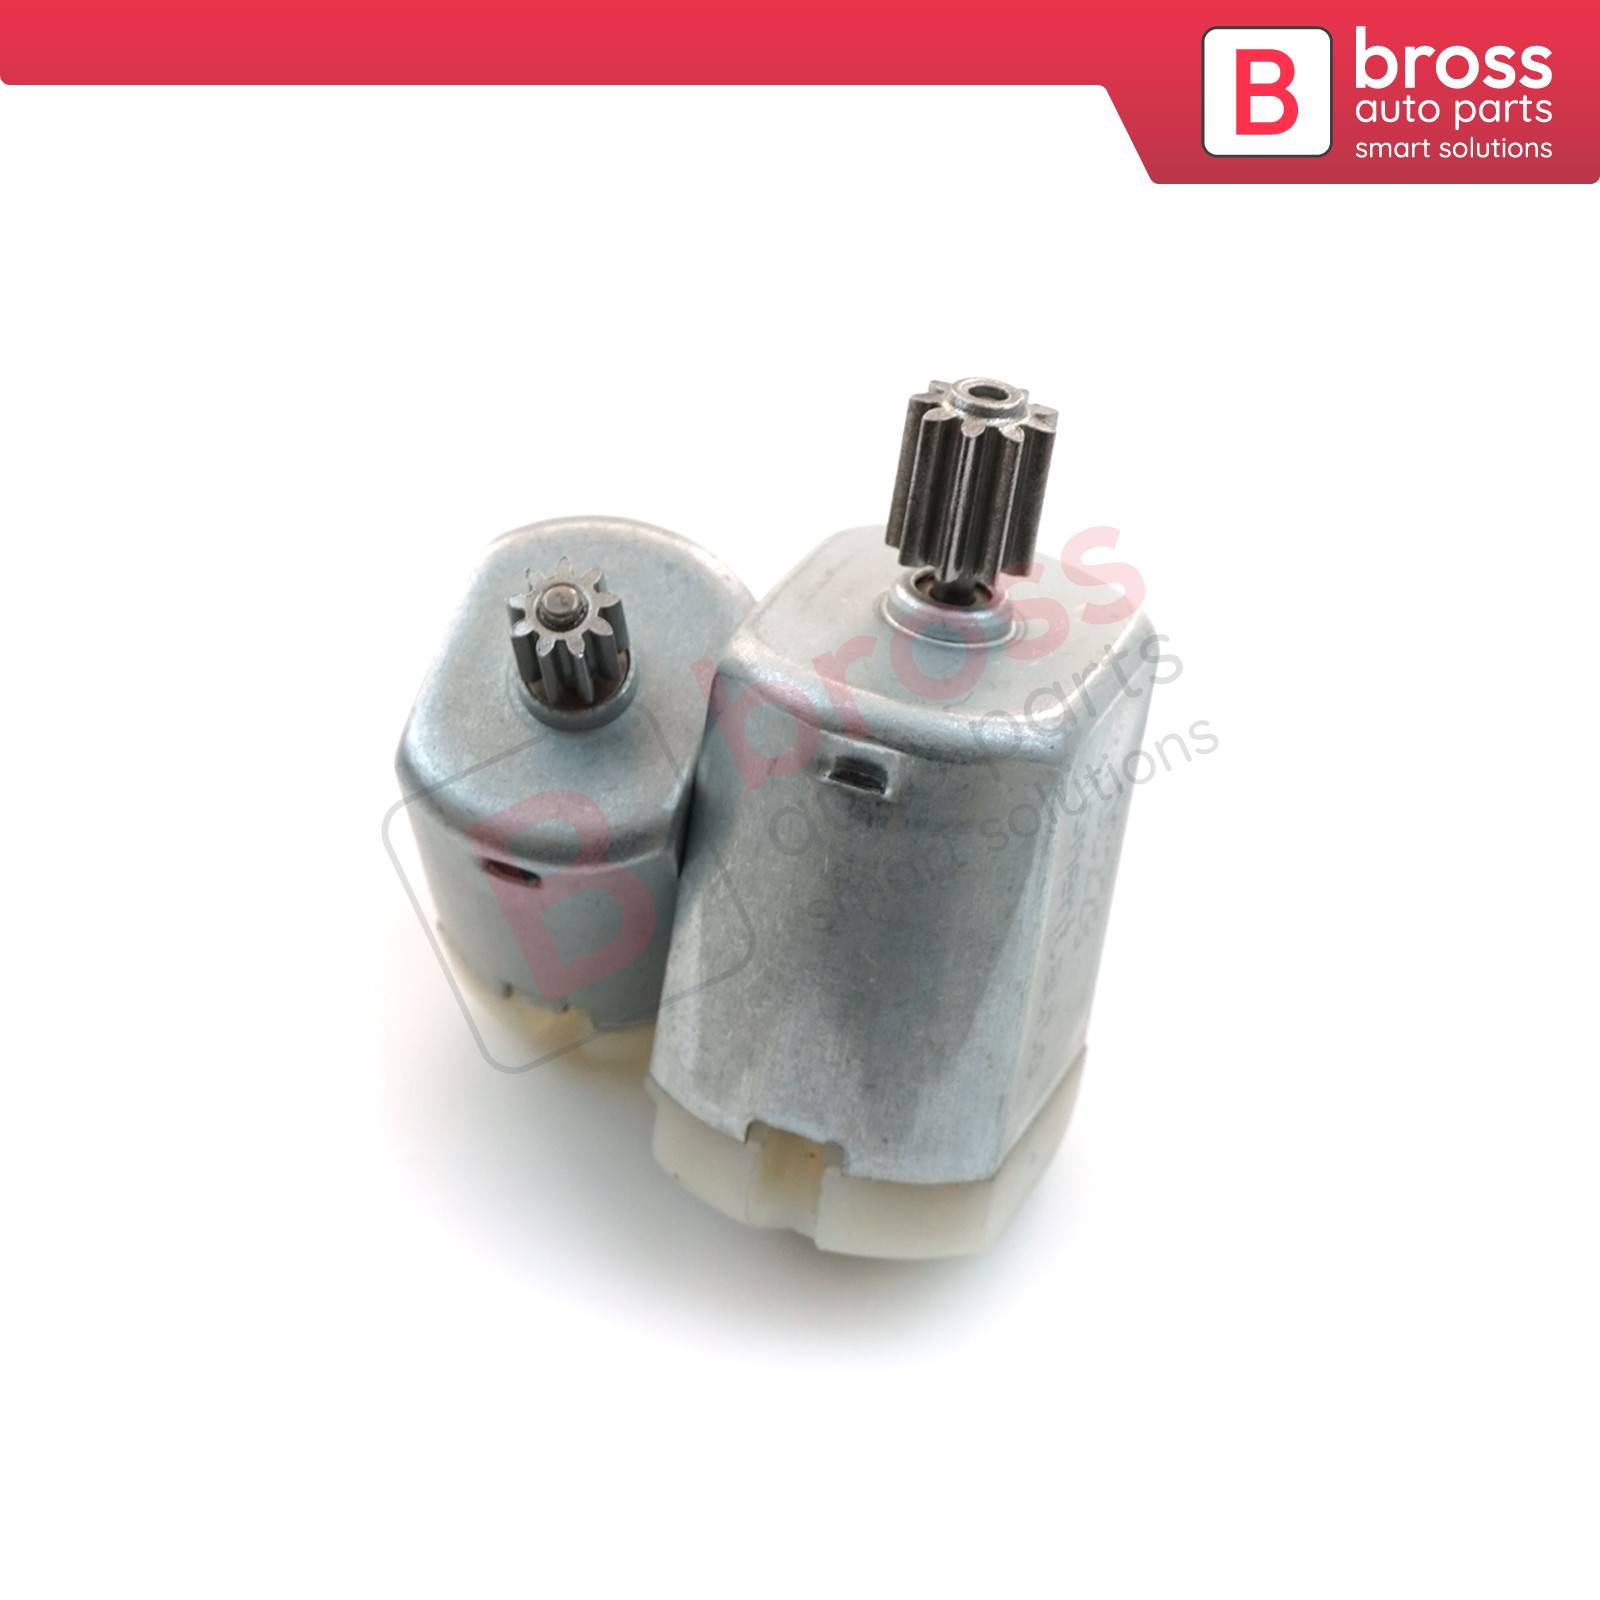 Bross Auto Parts LLC - BGE663 Door Lock 12V DC Actuator Small